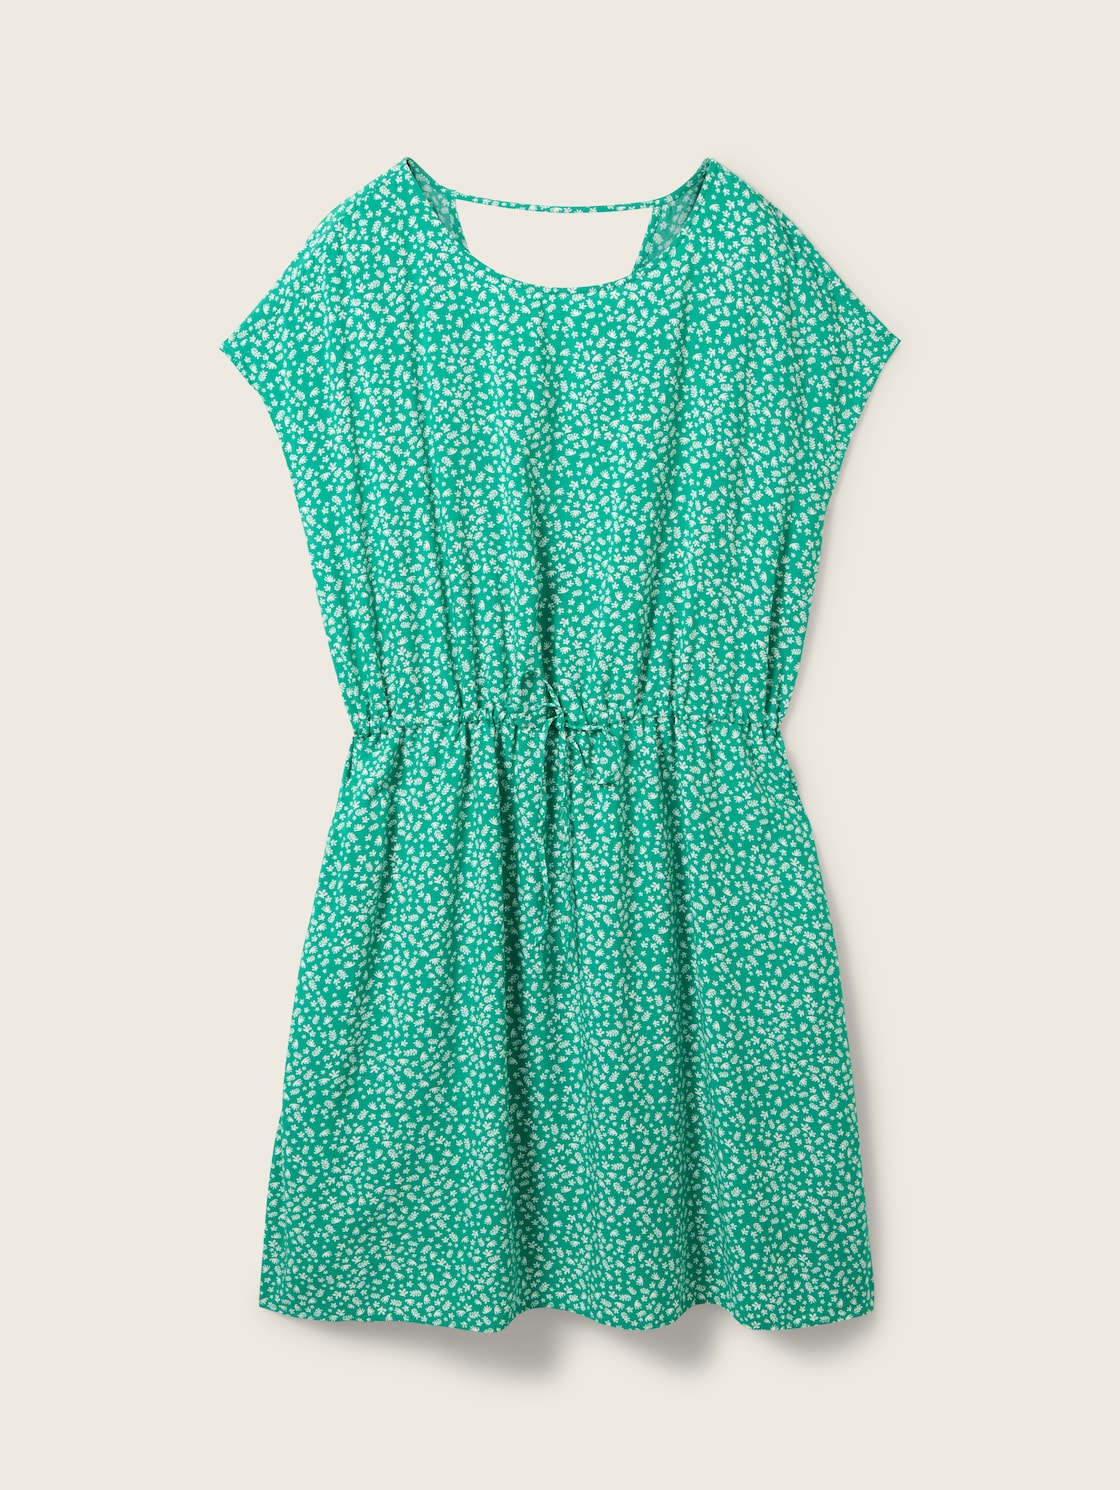 TOM TAILOR DENIM Damen Kleid mit Livaeco, grün, Print, Gr. XL von Tom Tailor Denim